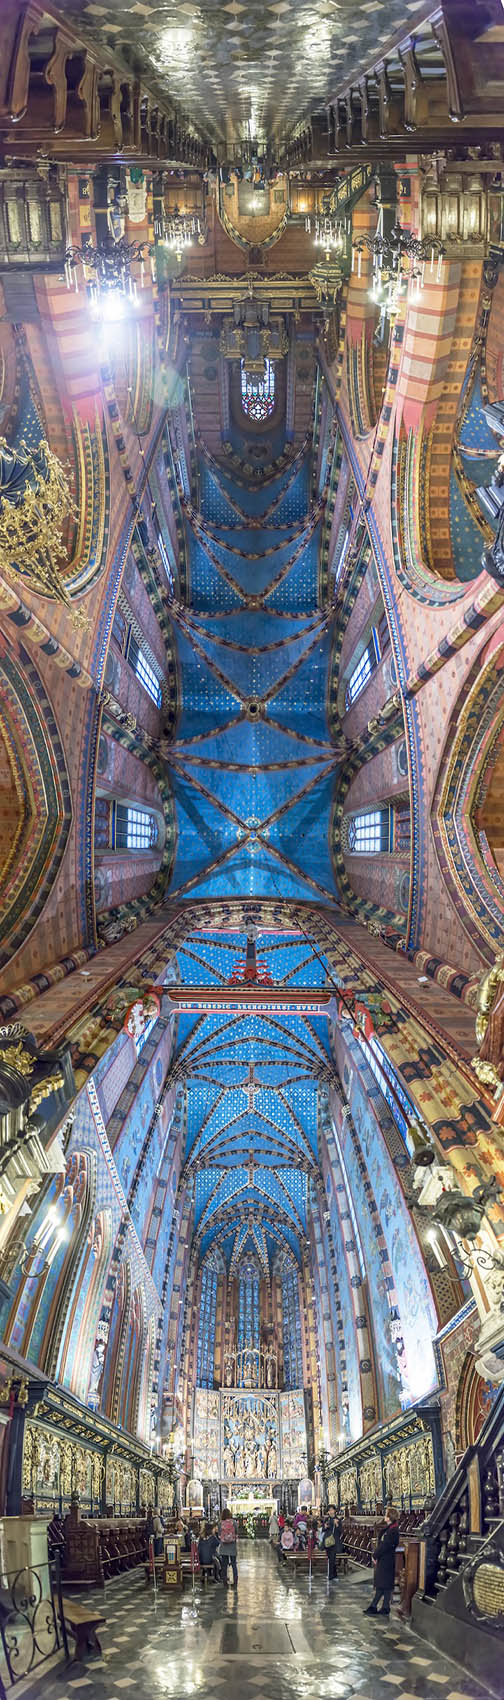 تصاویر پانورامای بسیار زیبا از کلیساهای سرتاسر دنیا + تصاویر